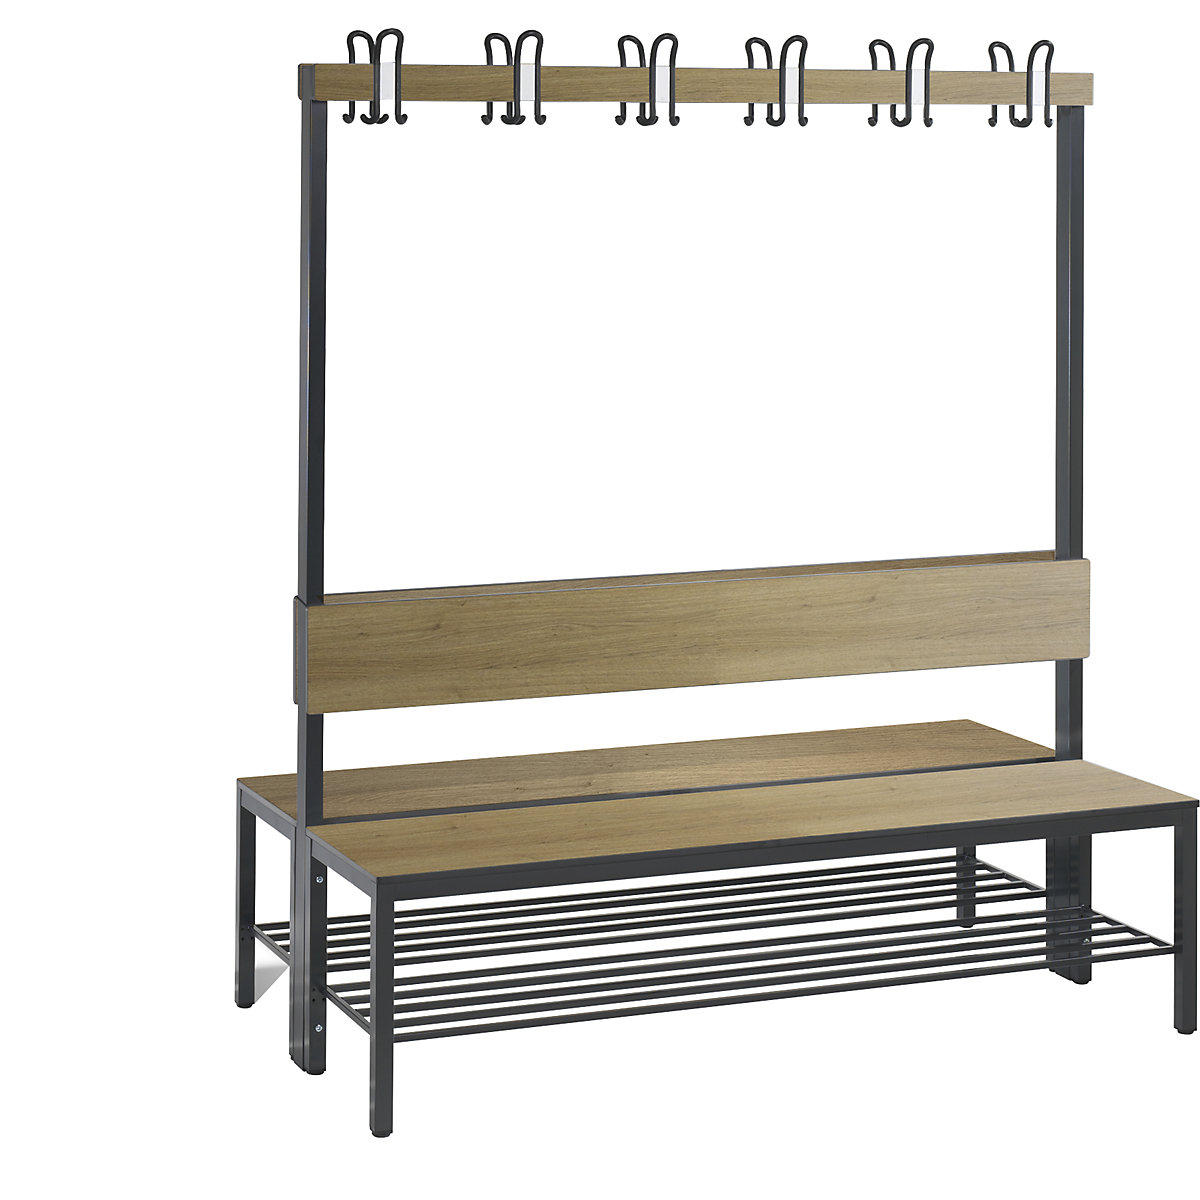 Šatnová lavice BASIC PLUS, oboustranná – C+P, plocha sedáku z HPL, lišta s háky, rošt na obuv, délka 1500 mm, dekor dub-6